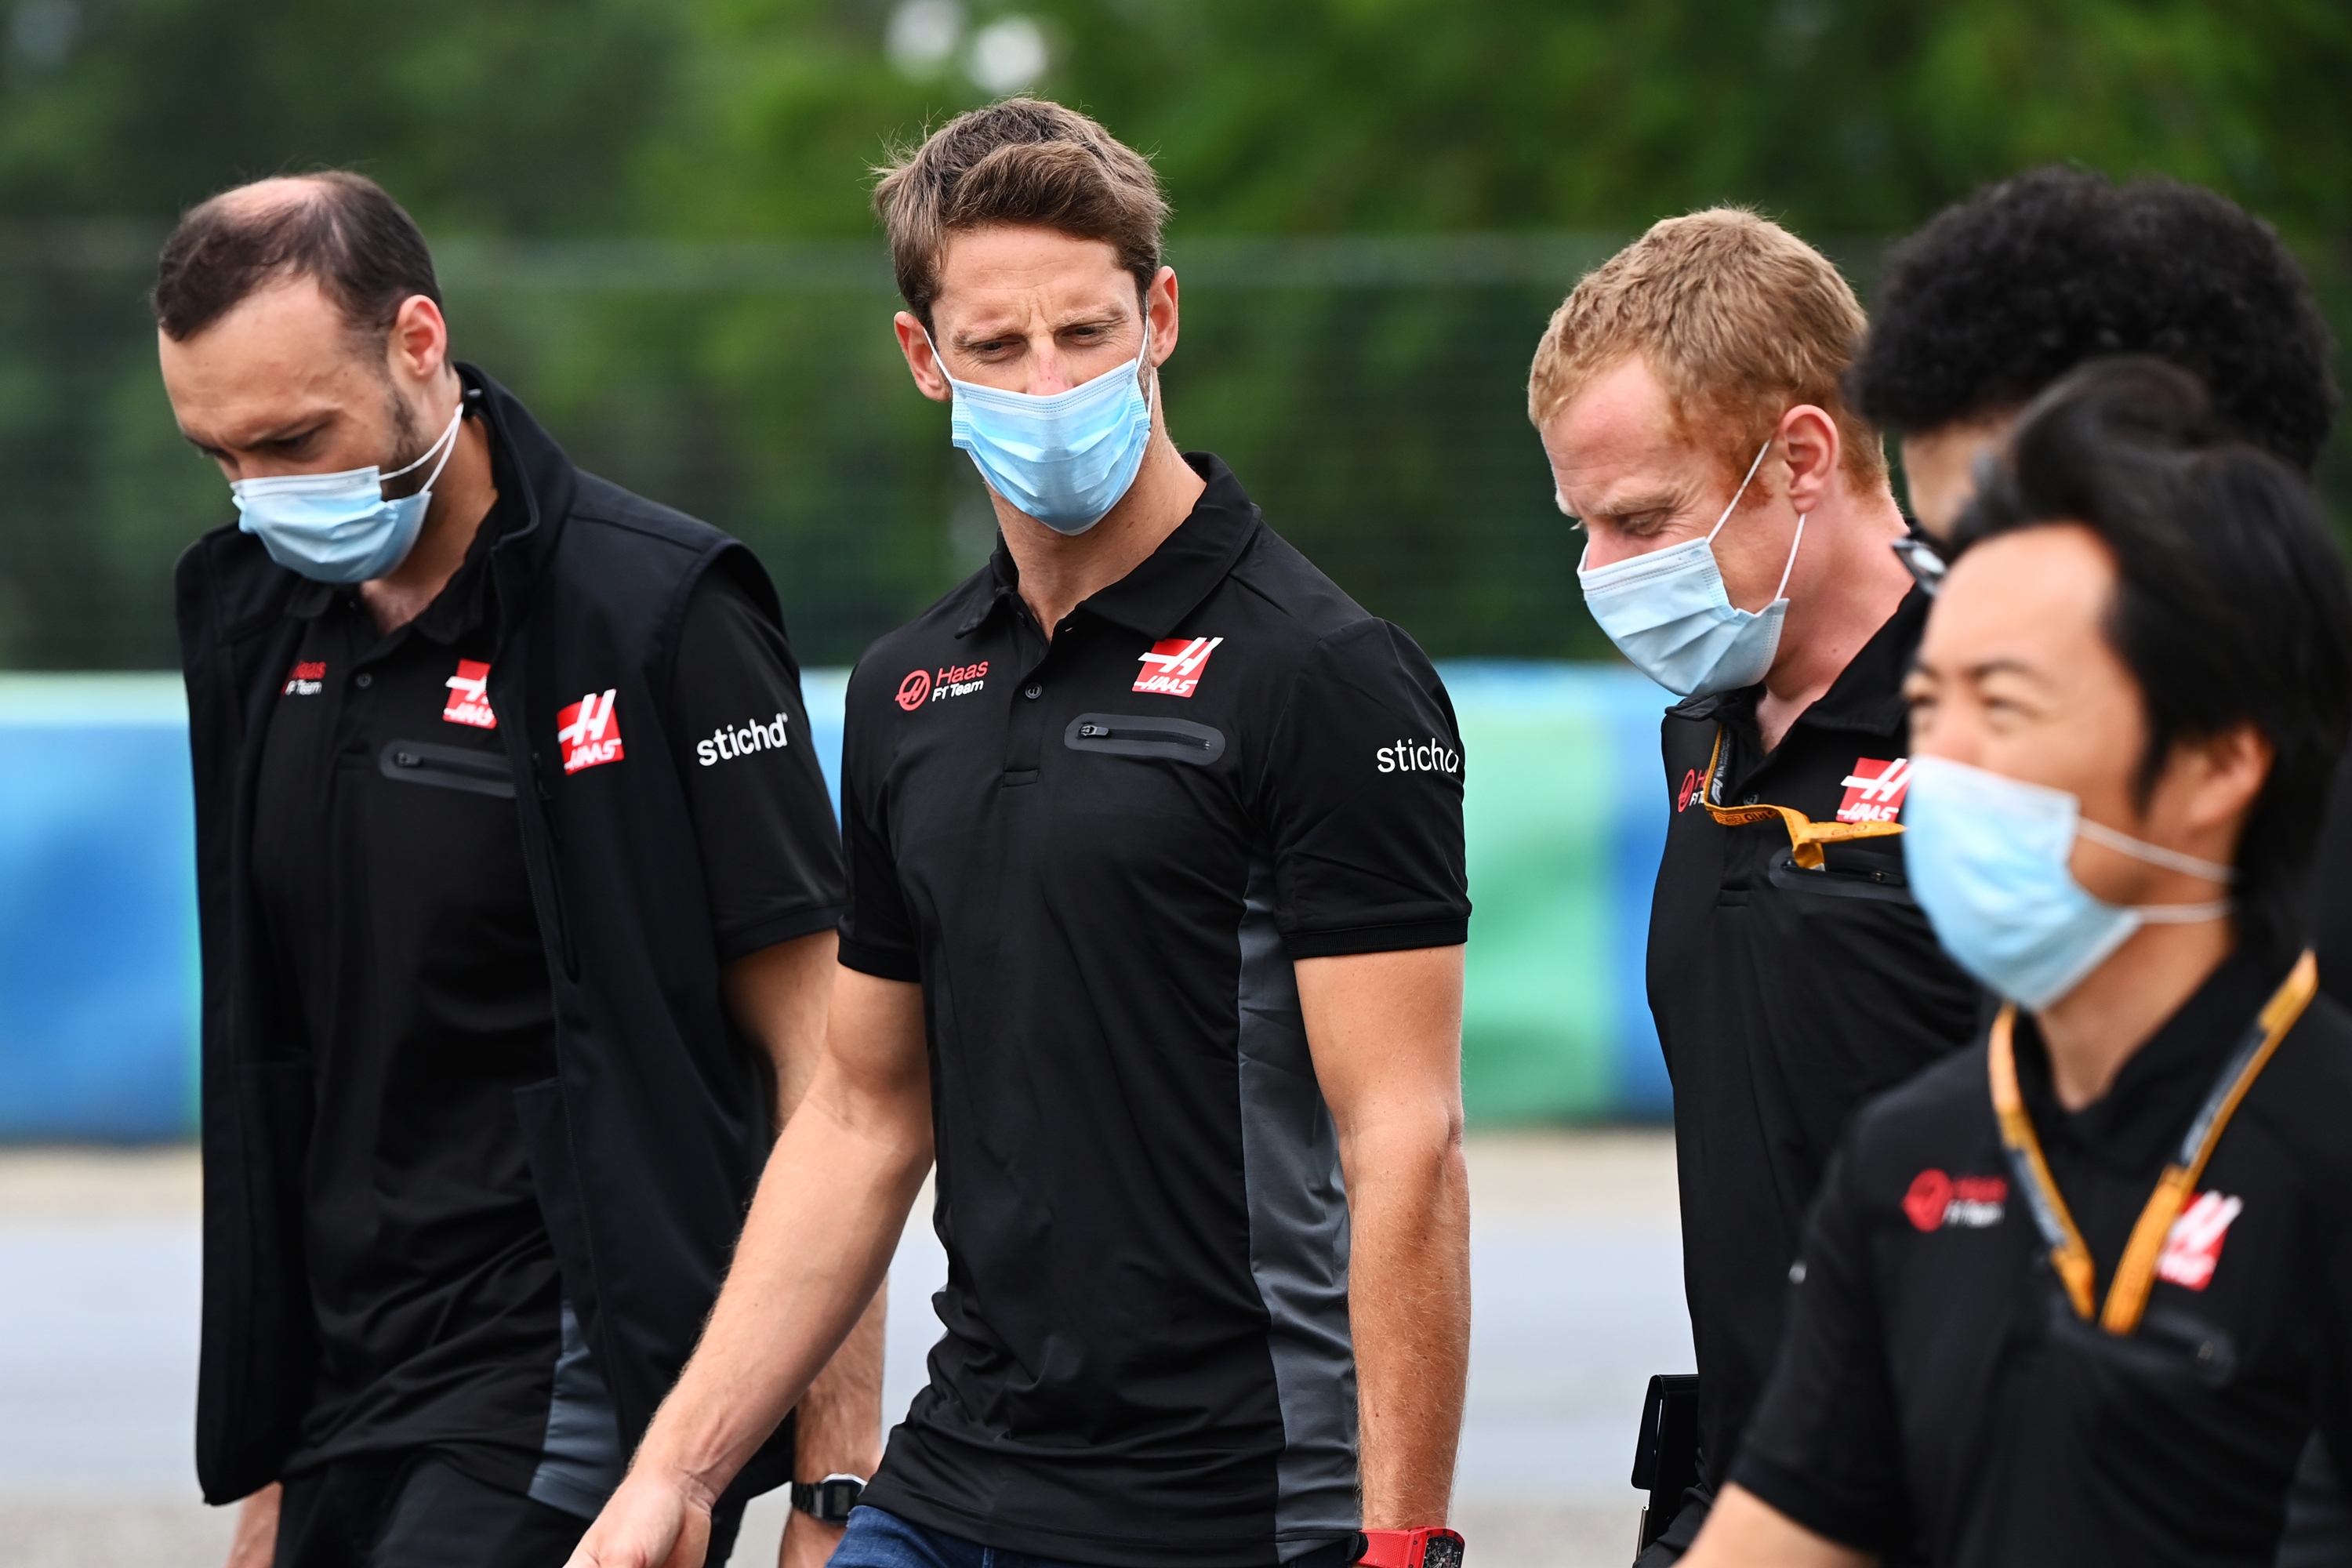 A haasos Romain Grosjean esetében is kötelező viselet.<br /><br />Fotó: LAT Images / Haas F1 Media